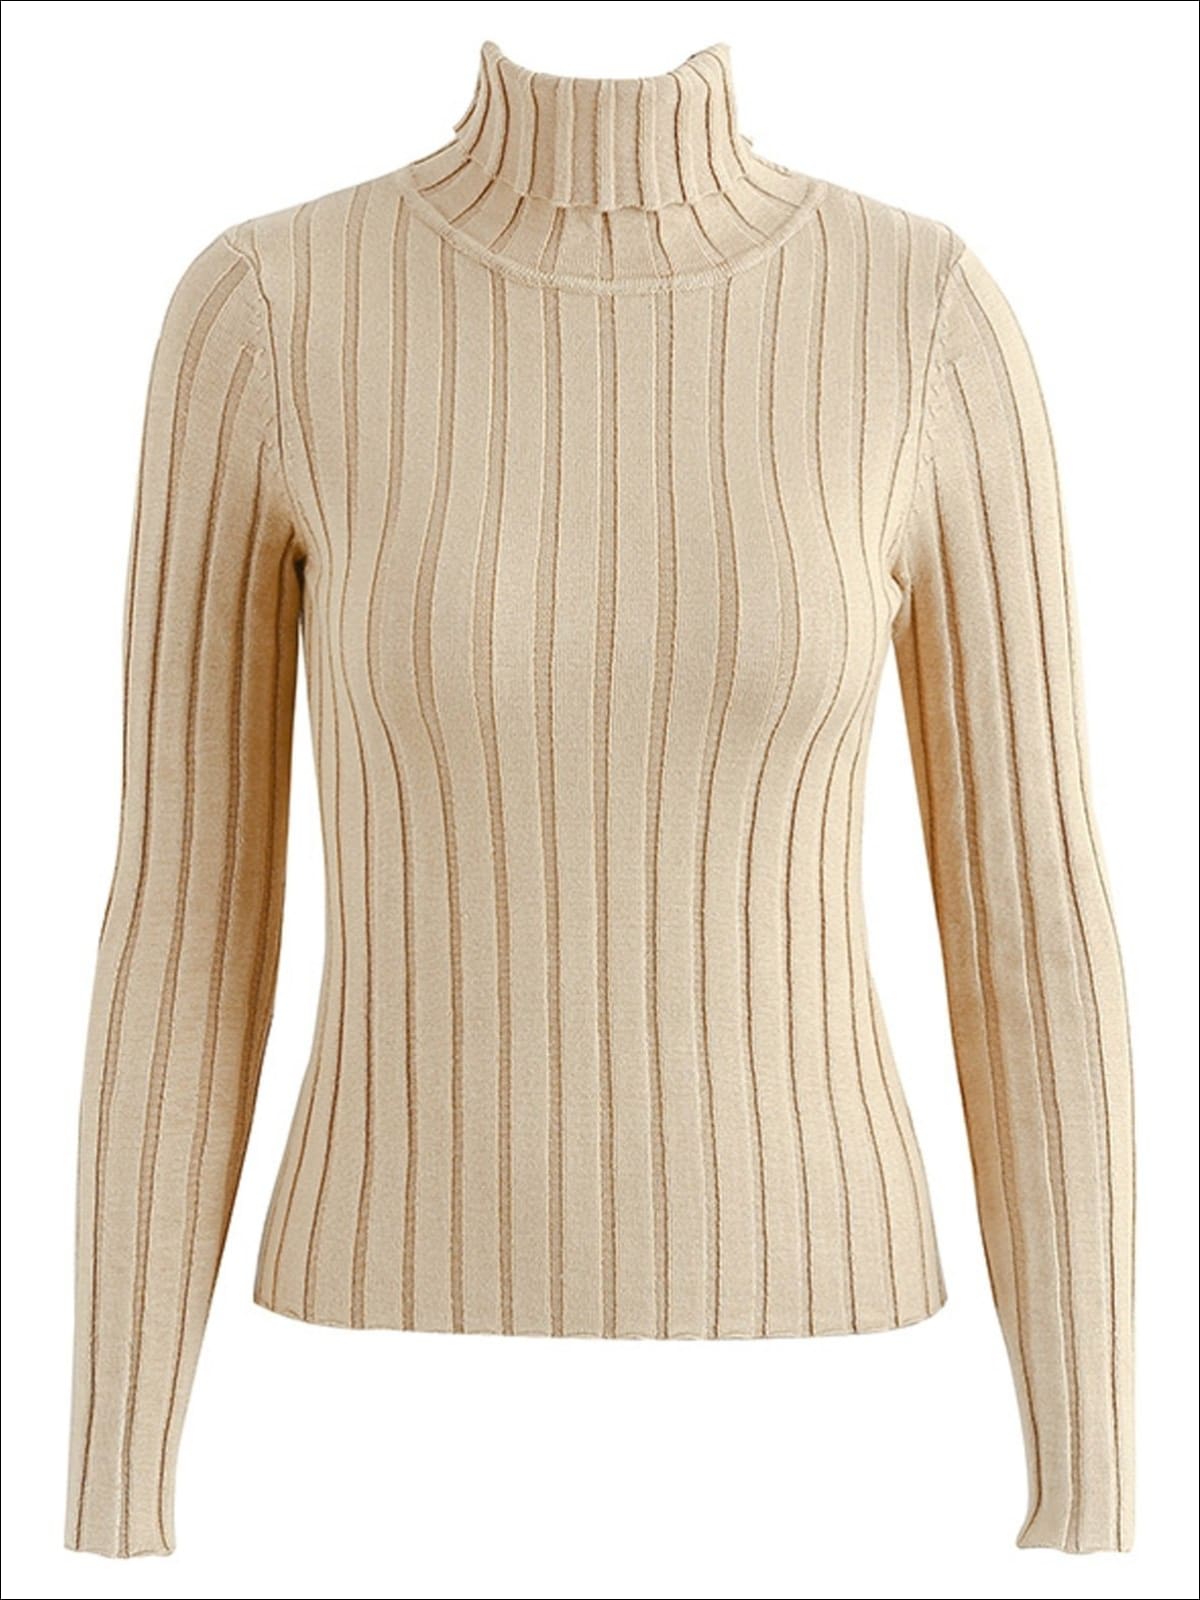 RebelsMarket Women's Long Sleeve Turtle Neck Sweater Top